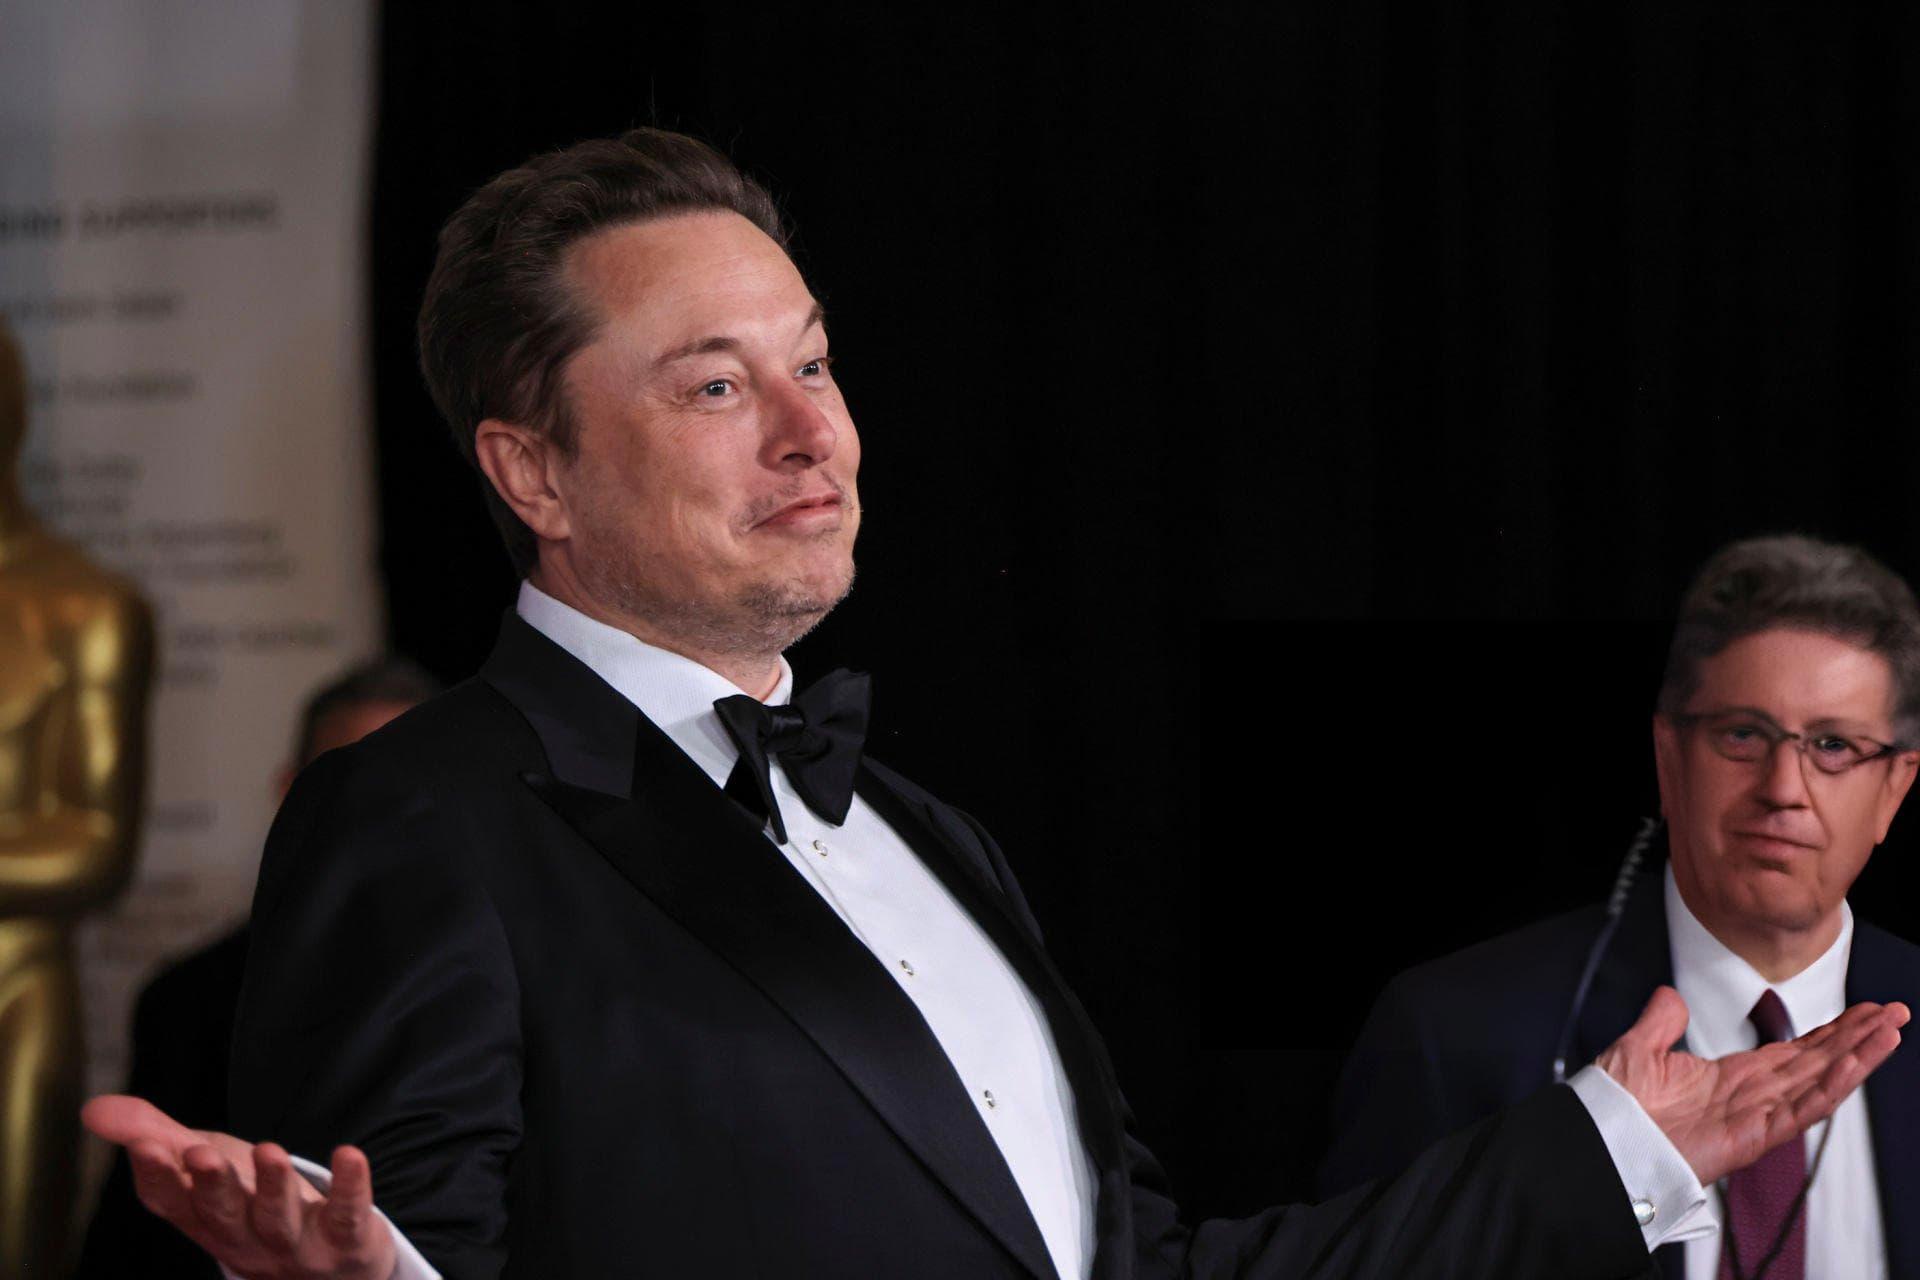 مرجع متخصصين ايران ايلان ماسك / Elon Musk با كت شلوار مشكي در مراسم مت گالا